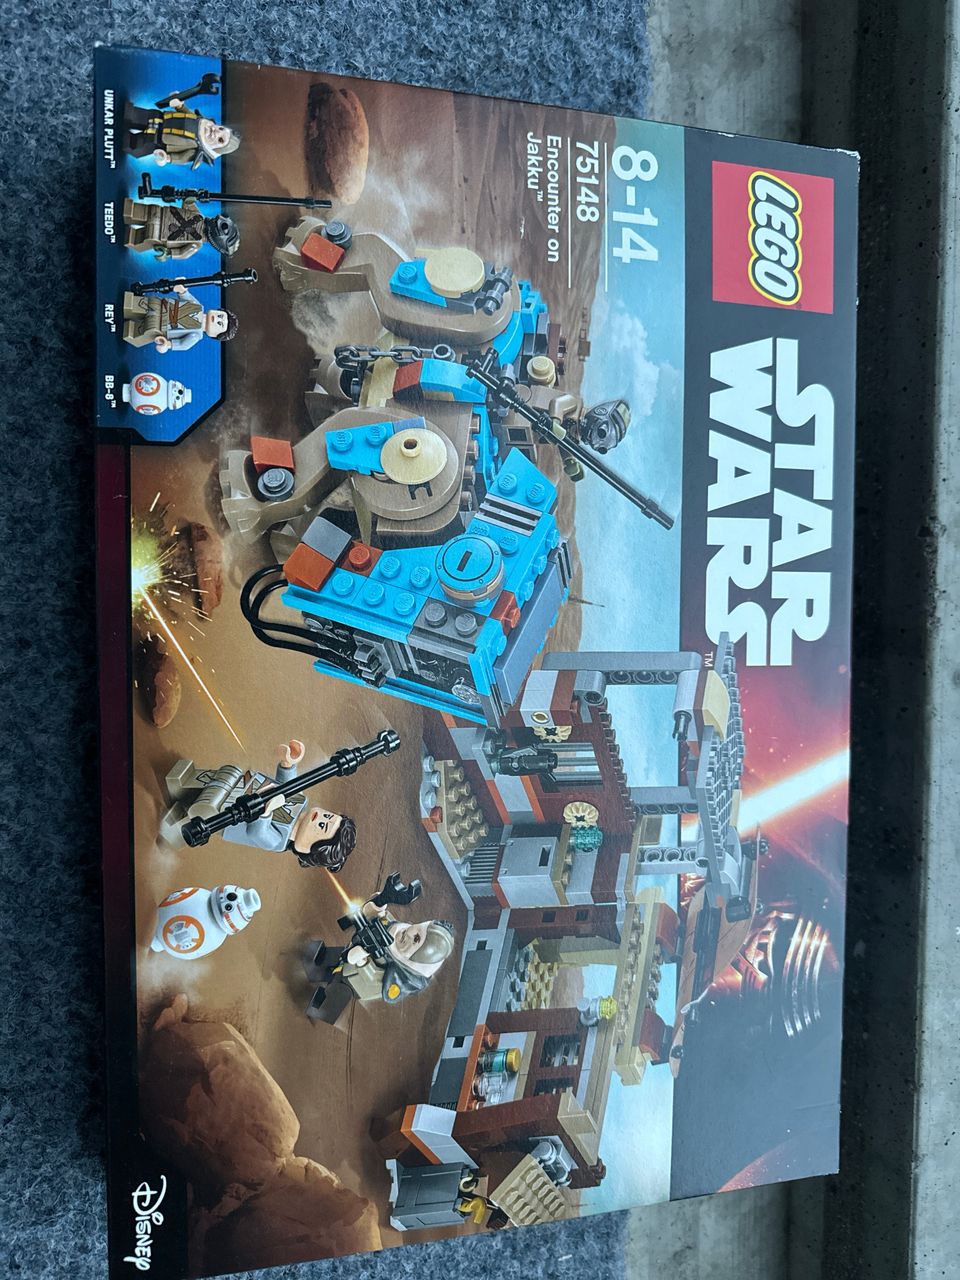 Lego star wars 75148